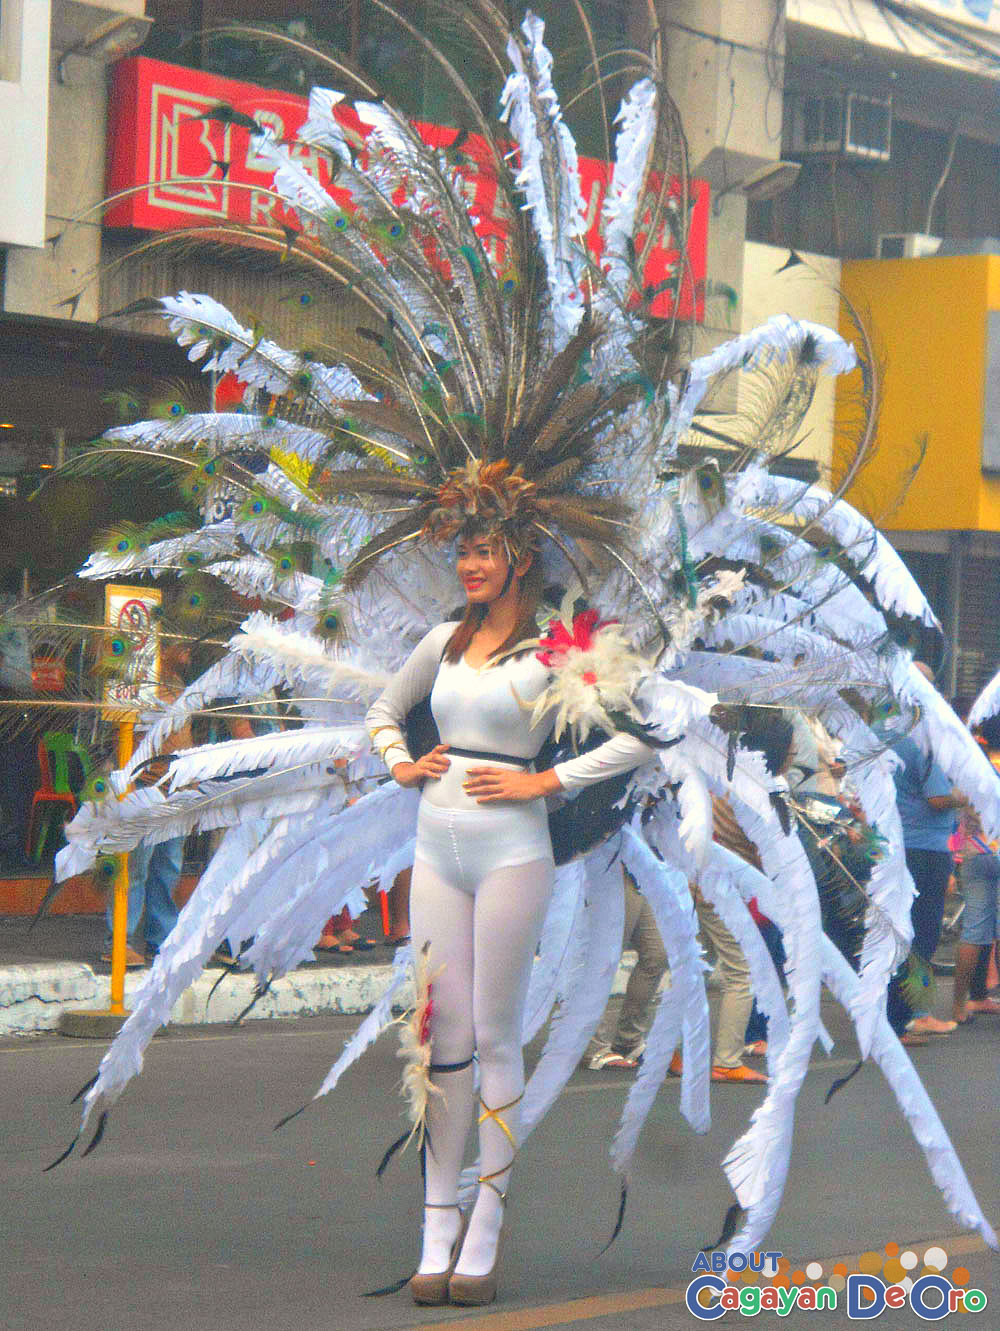 Brgy 21 Carnival Queen - Cagayan de Oro Carnival Parade